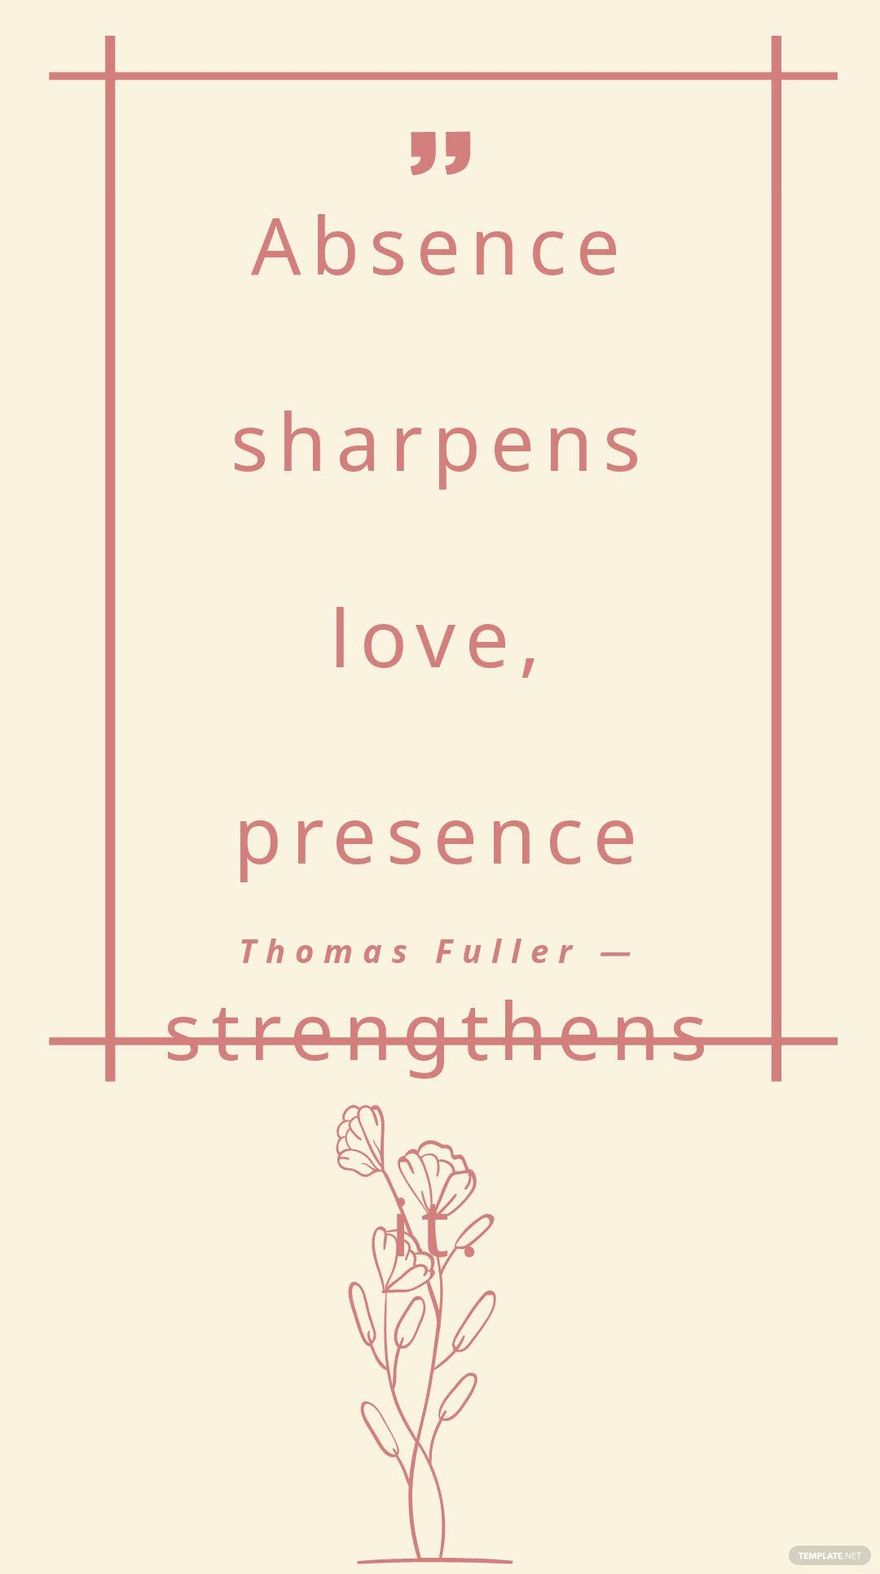 Thomas Fuller — Absence sharpens love, presence strengthens it.